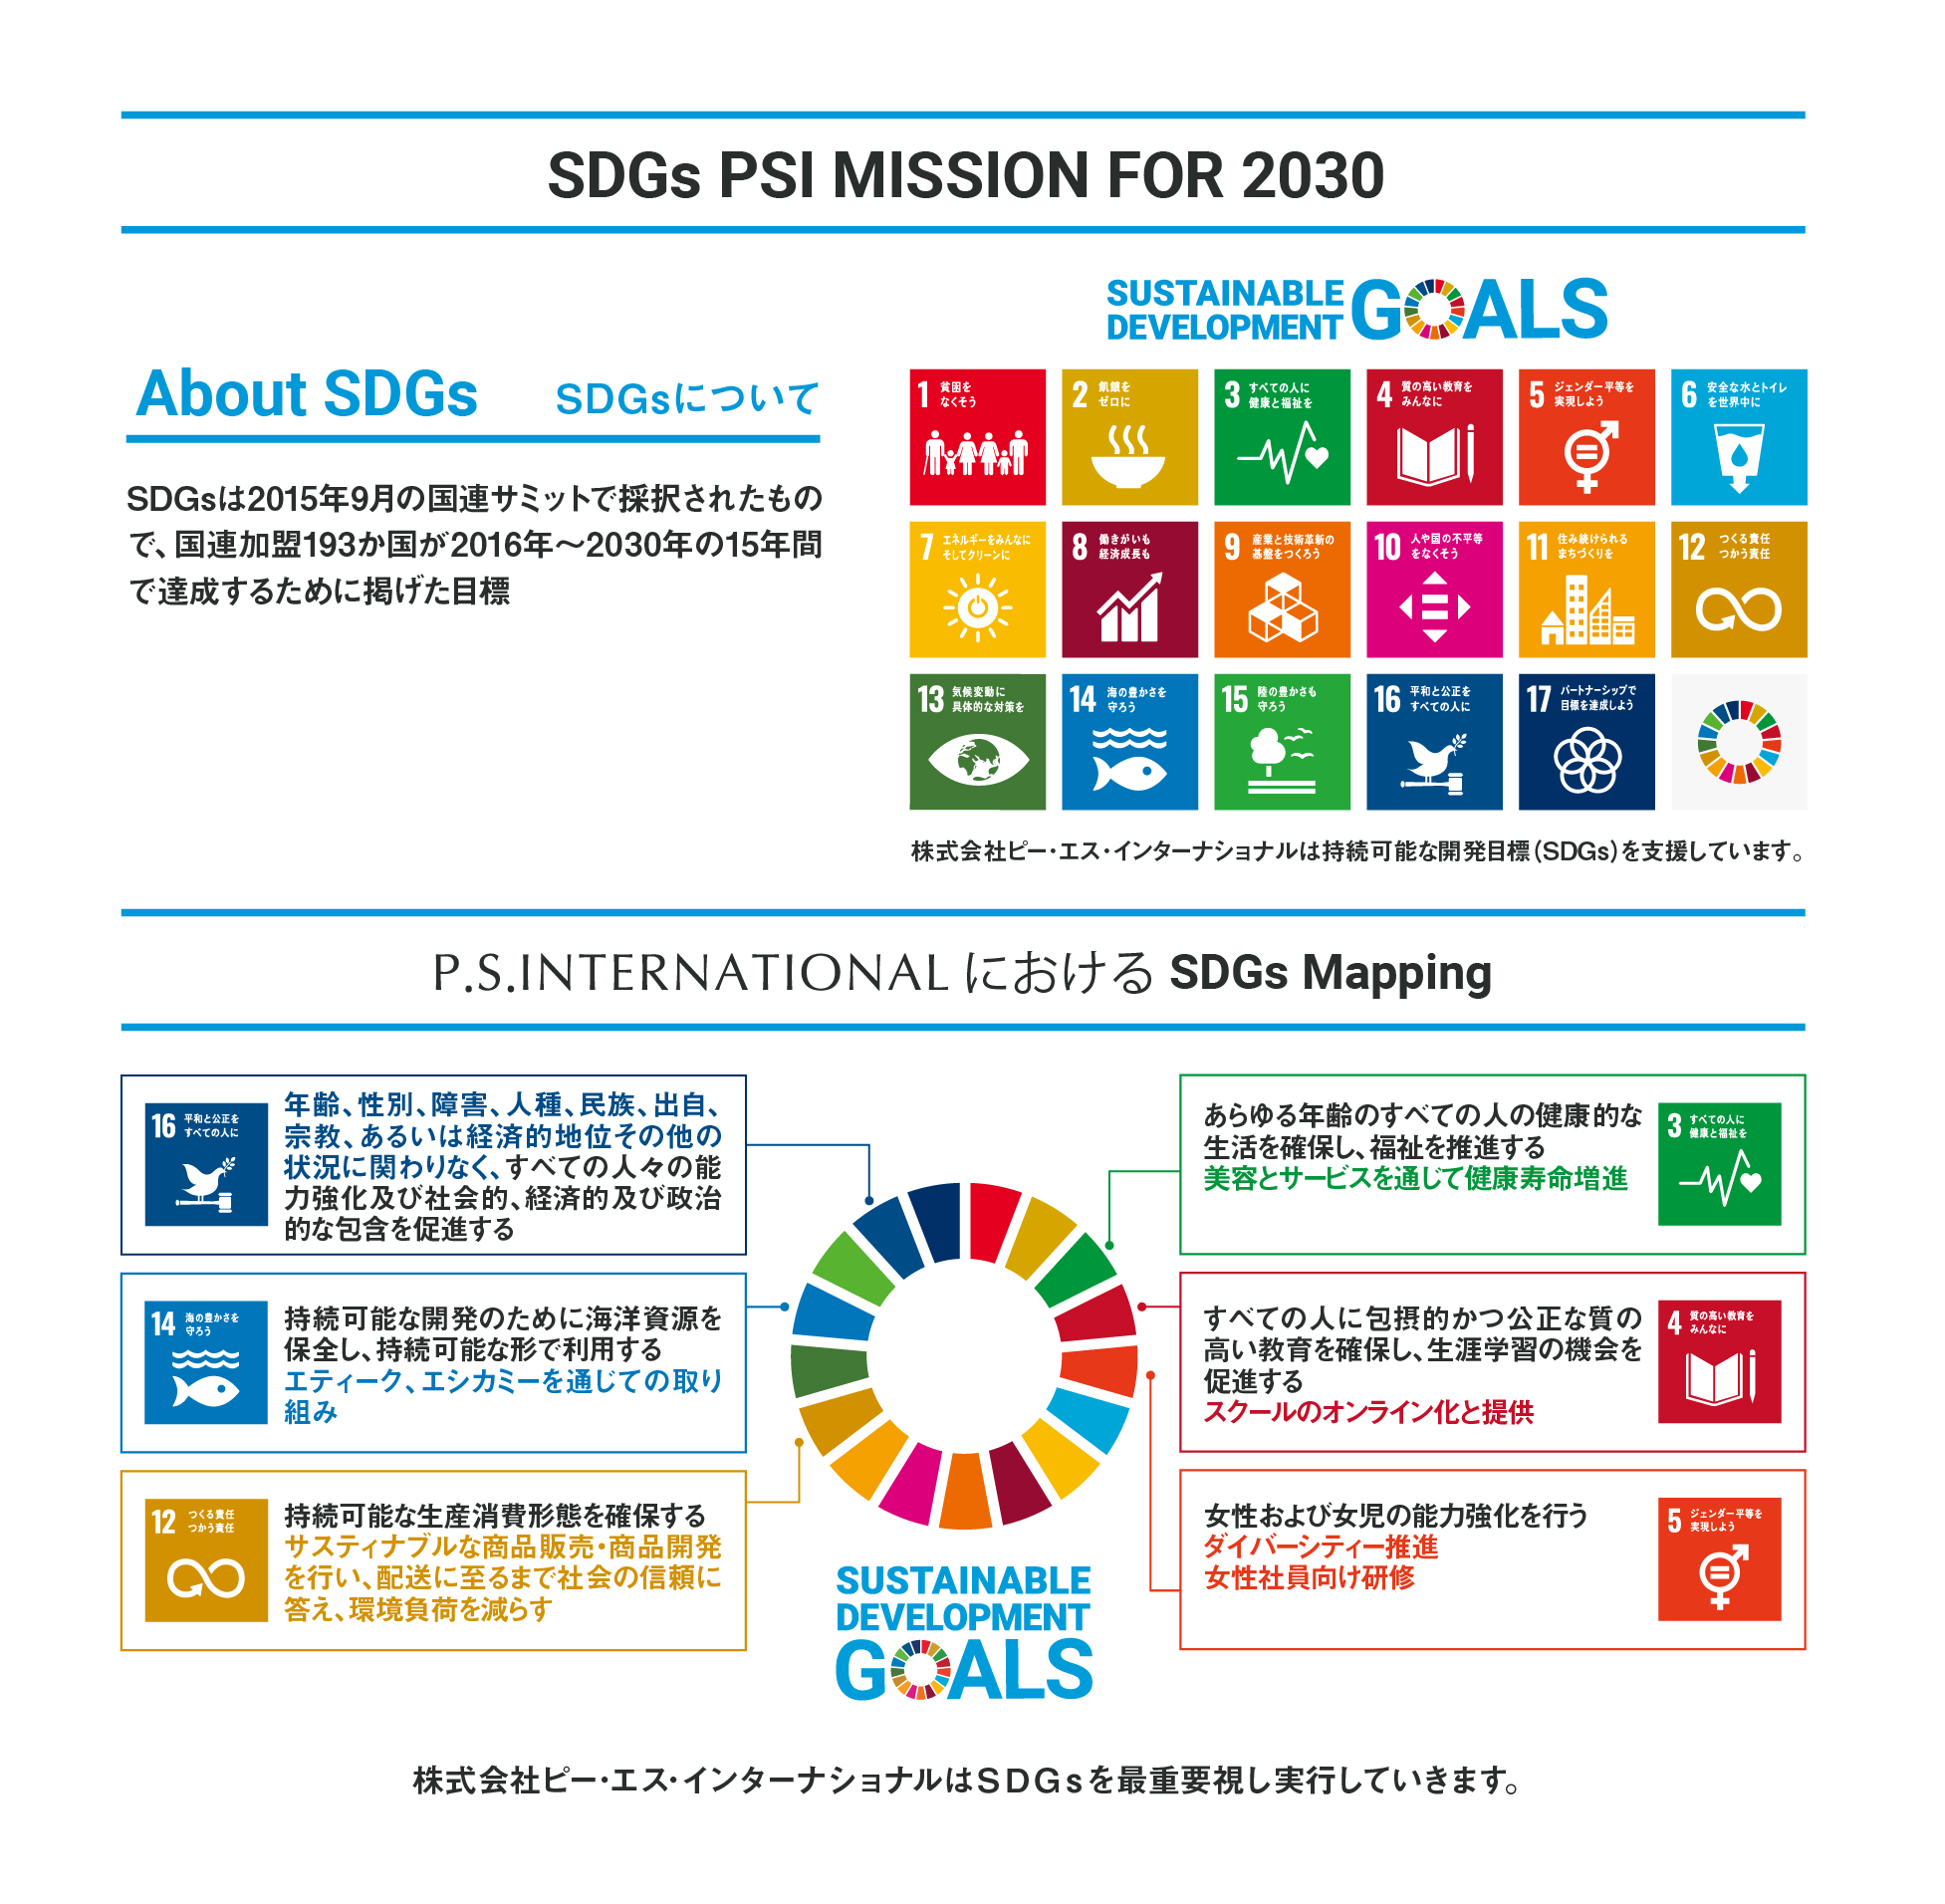 SDGs PSI MISSION FOR 2030